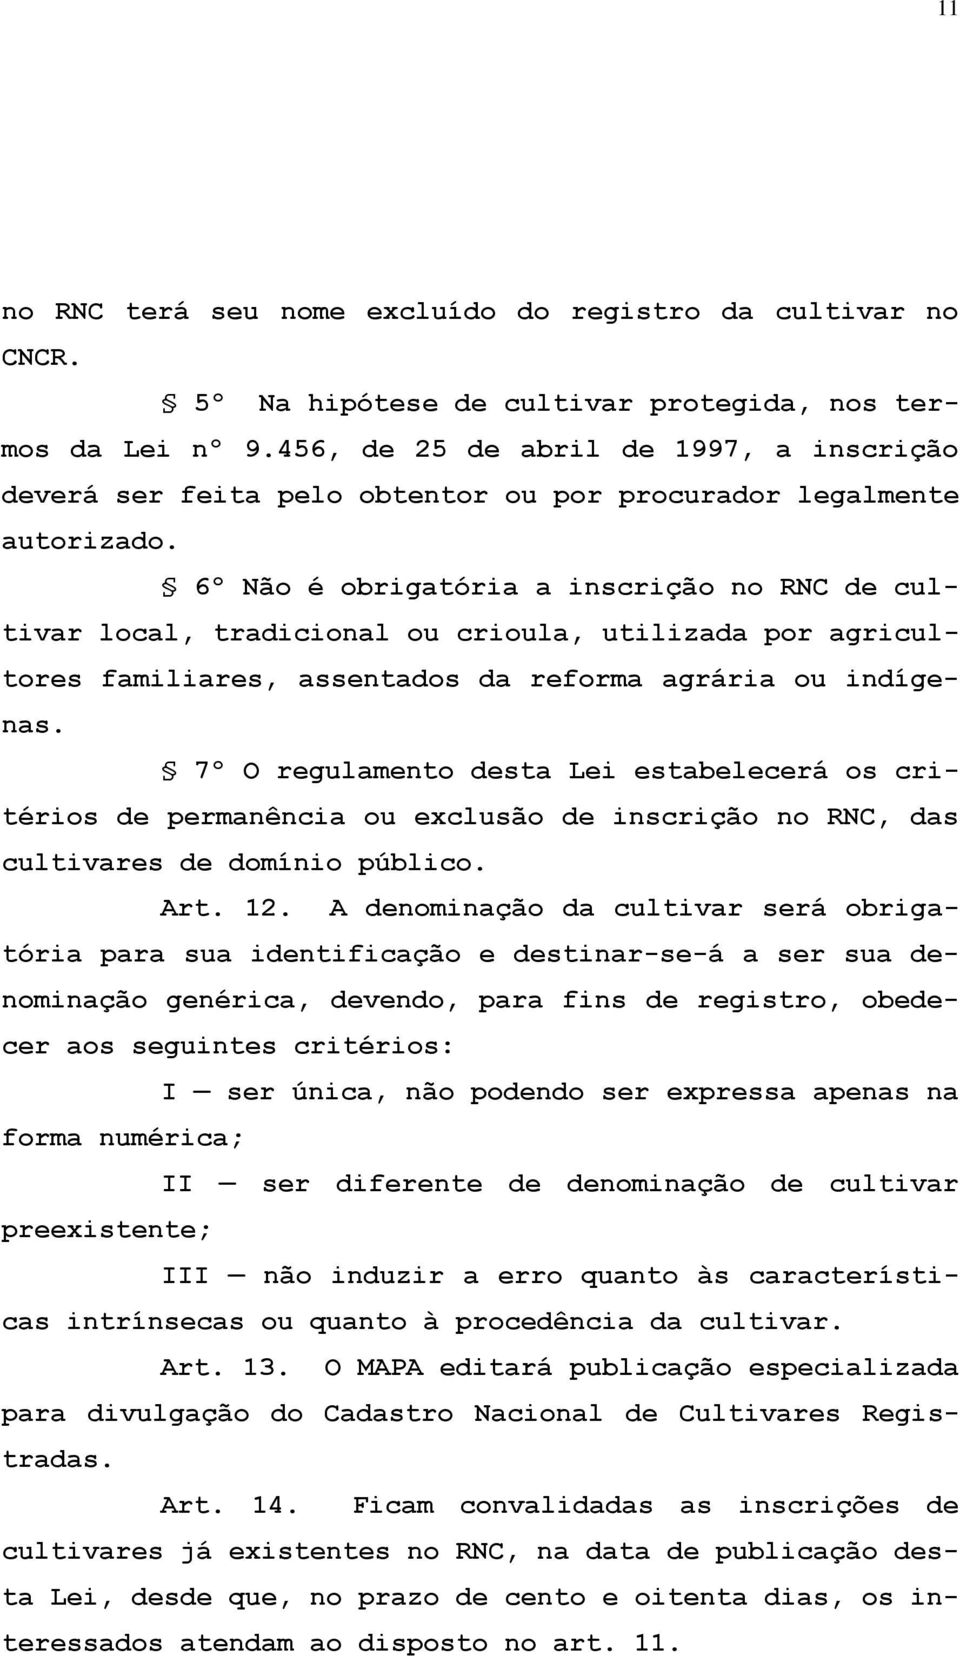 6º Não é obrigatória a inscrição no RNC de cultivar local, tradicional ou crioula, utilizada por agricultores familiares, assentados da reforma agrária ou indígenas.